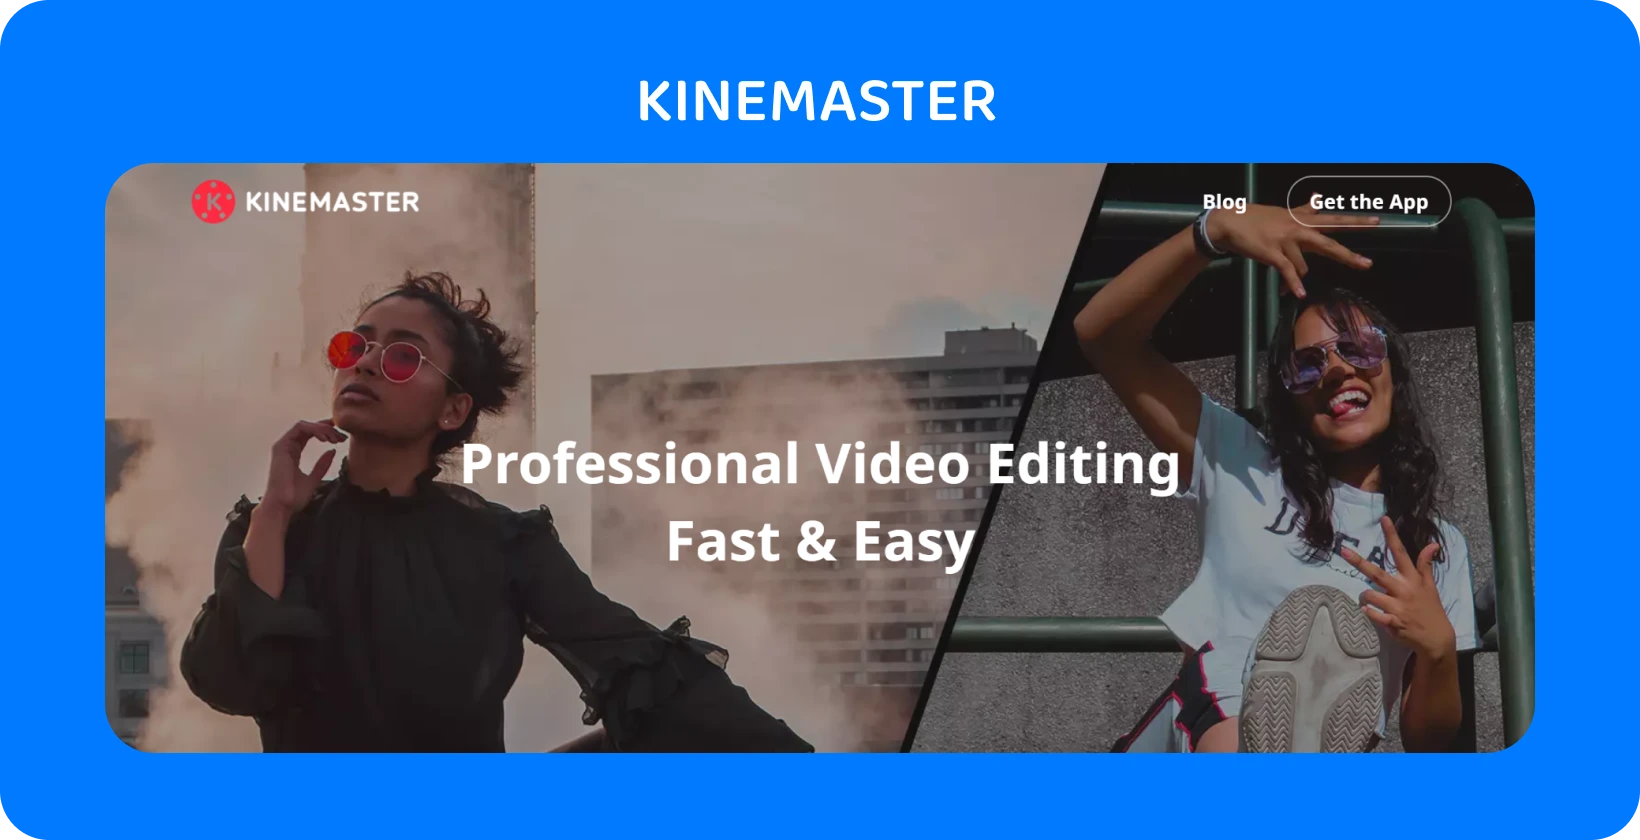 KineMaster appannonce med to modeller, der poserer, og fremhæver professionel videoredigering, der er hurtig og nem.